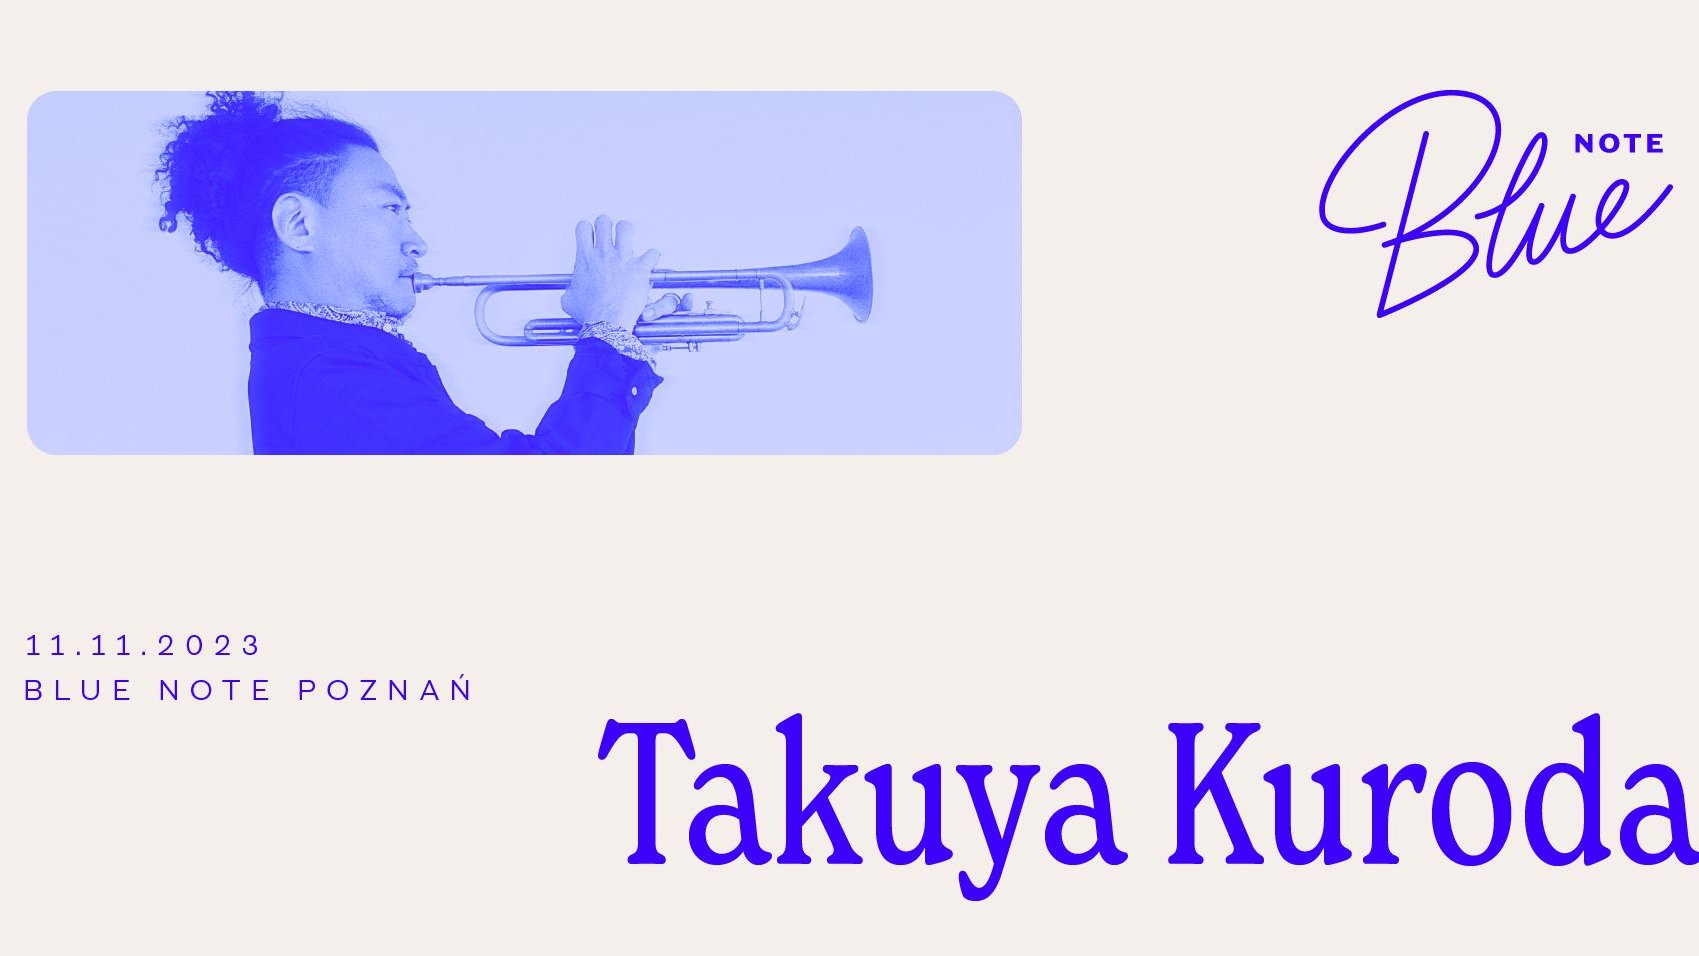 Plakat ze szczegółami dotyczącymi koncertu Takuya Kurody w Blue Note.